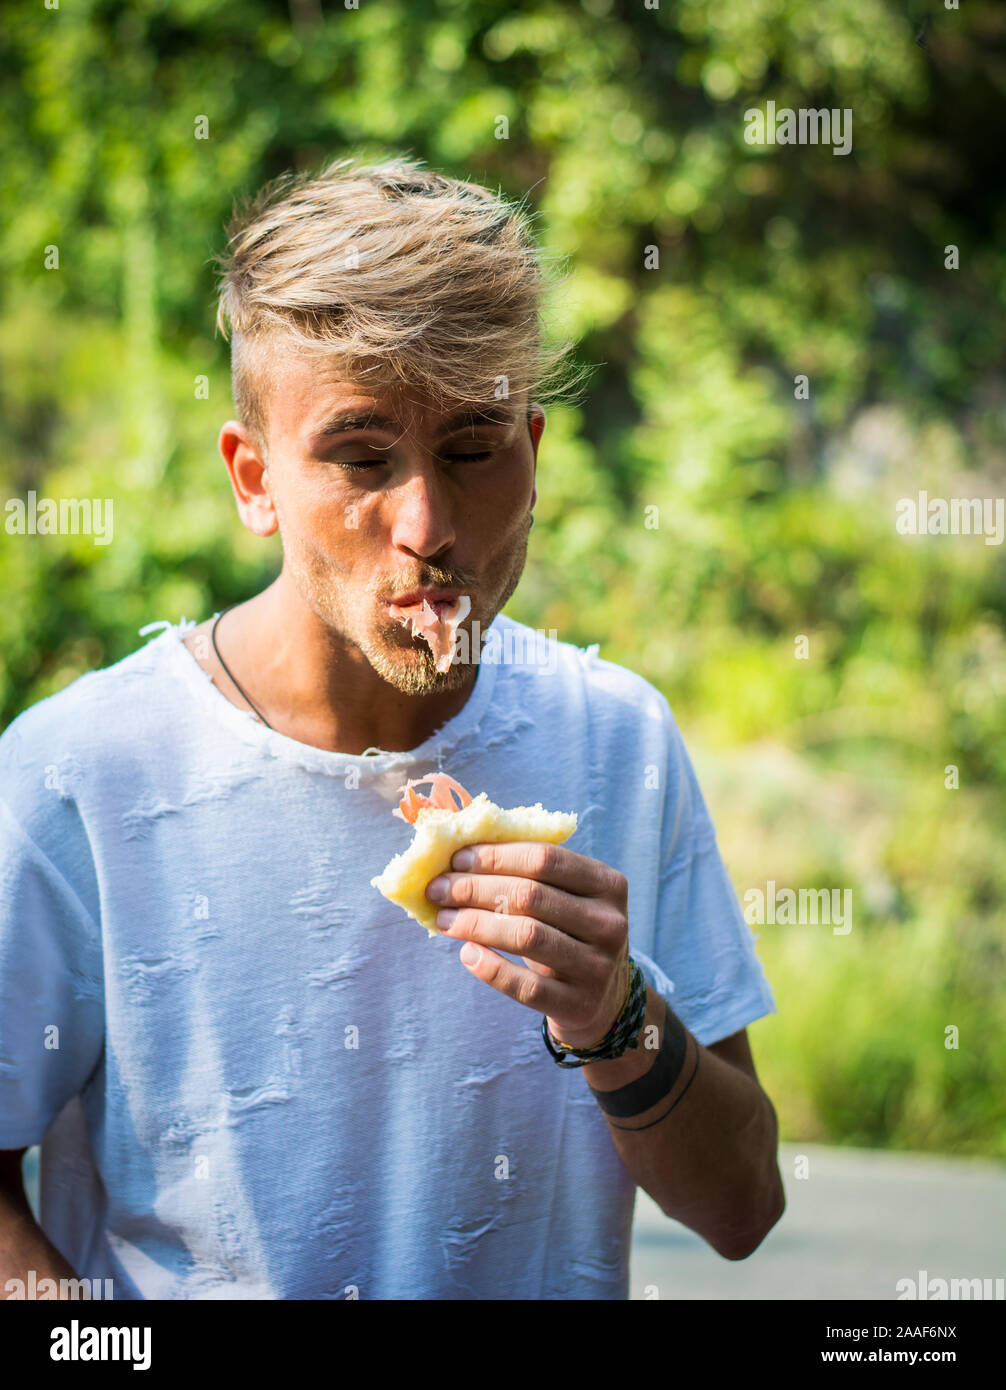 Man enjoying sandwich outside Stock Photo